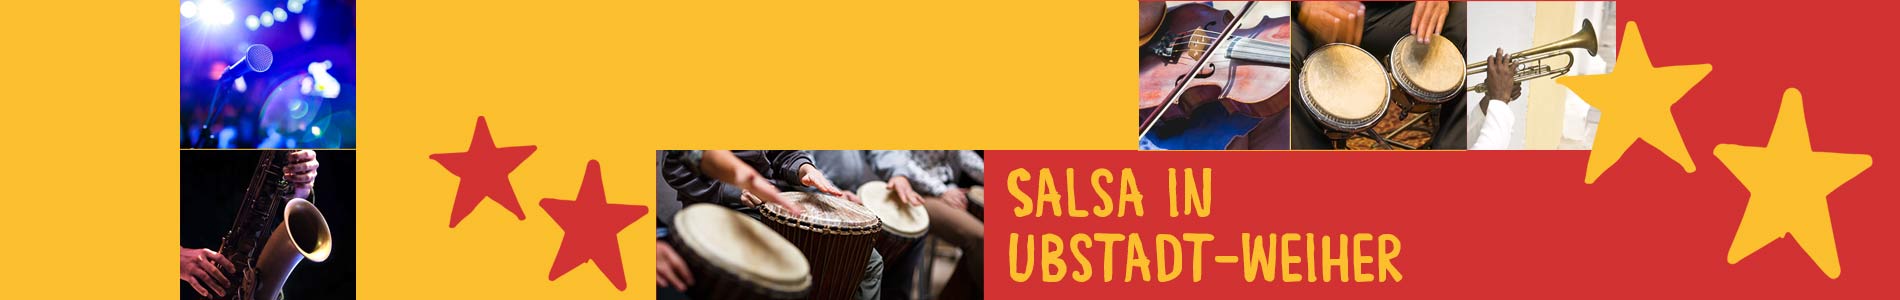 Salsa in Ubstadt-Weiher – Salsa lernen und tanzen, Tanzkurse, Partys, Veranstaltungen